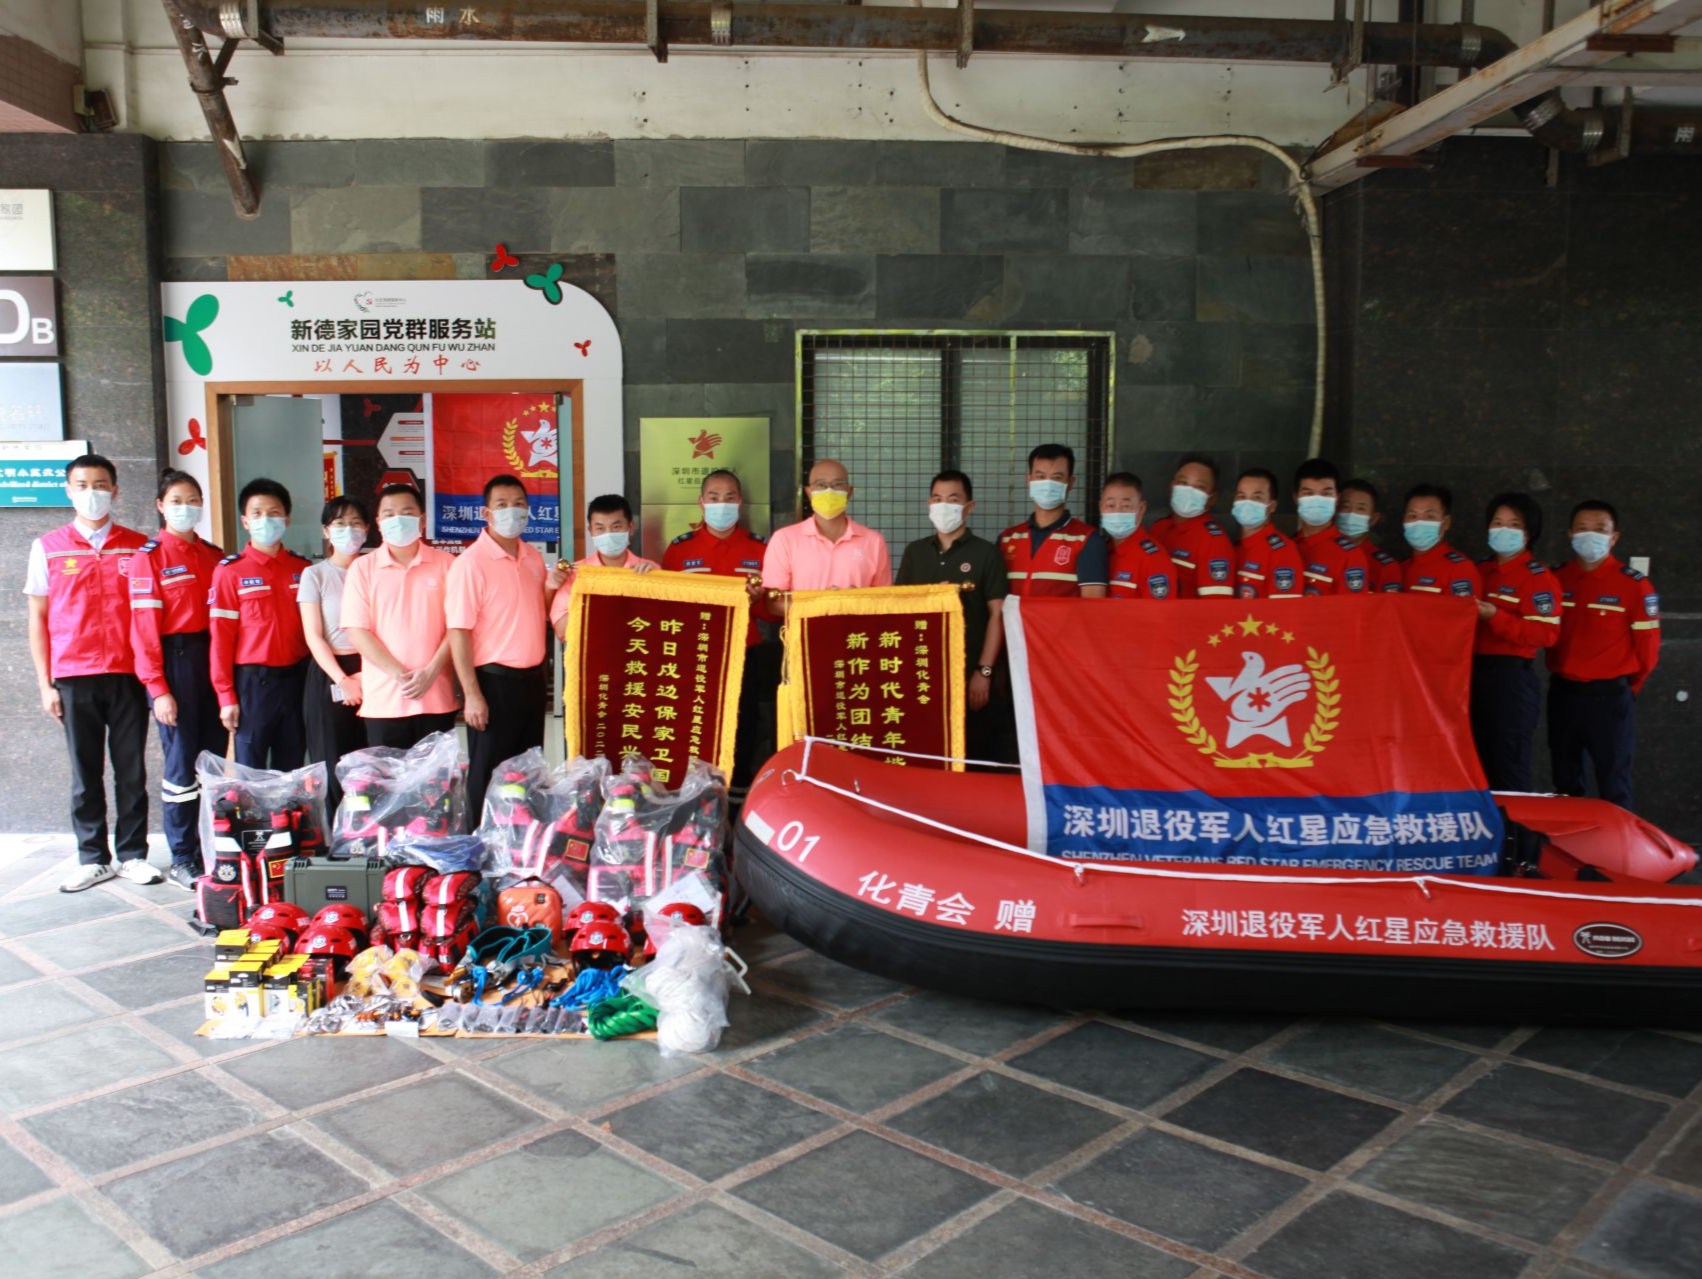 成立两年参与社会公益救援3000余人次  深圳市退役军人应急救援队收到爱心企业捐赠物资